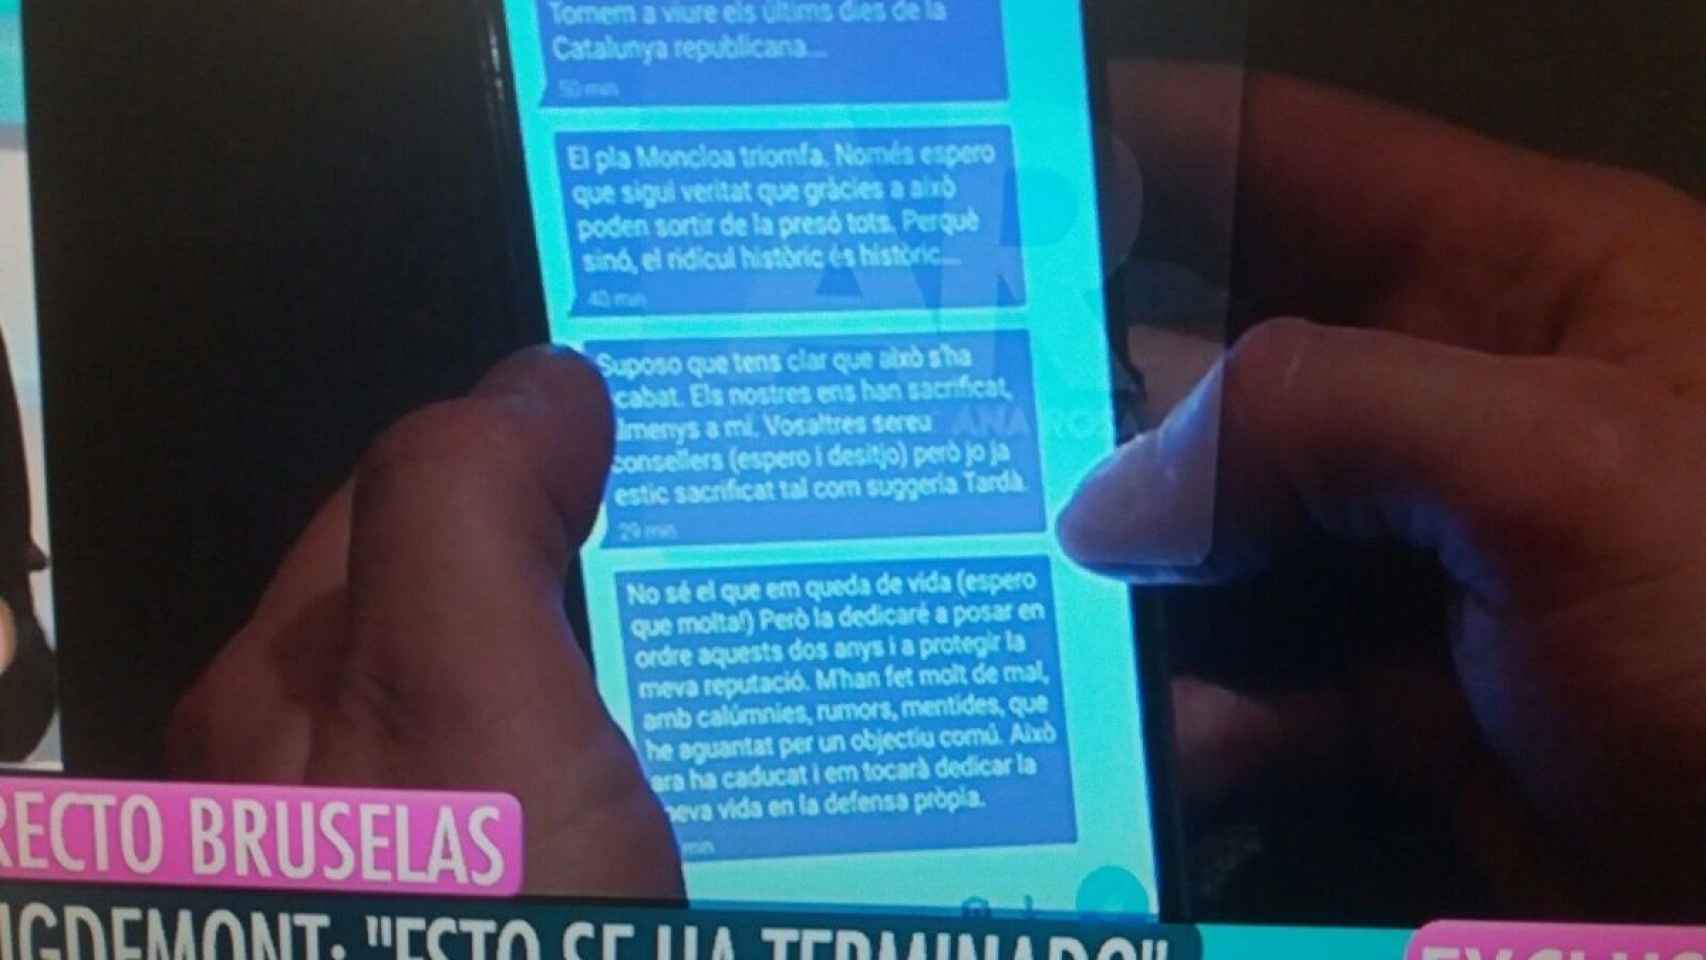 Los mensajes que Puigdemont envió a Comín y que fueron grabados por cámaras del programa de Ana Rosa Quintana en Telecinco / CG